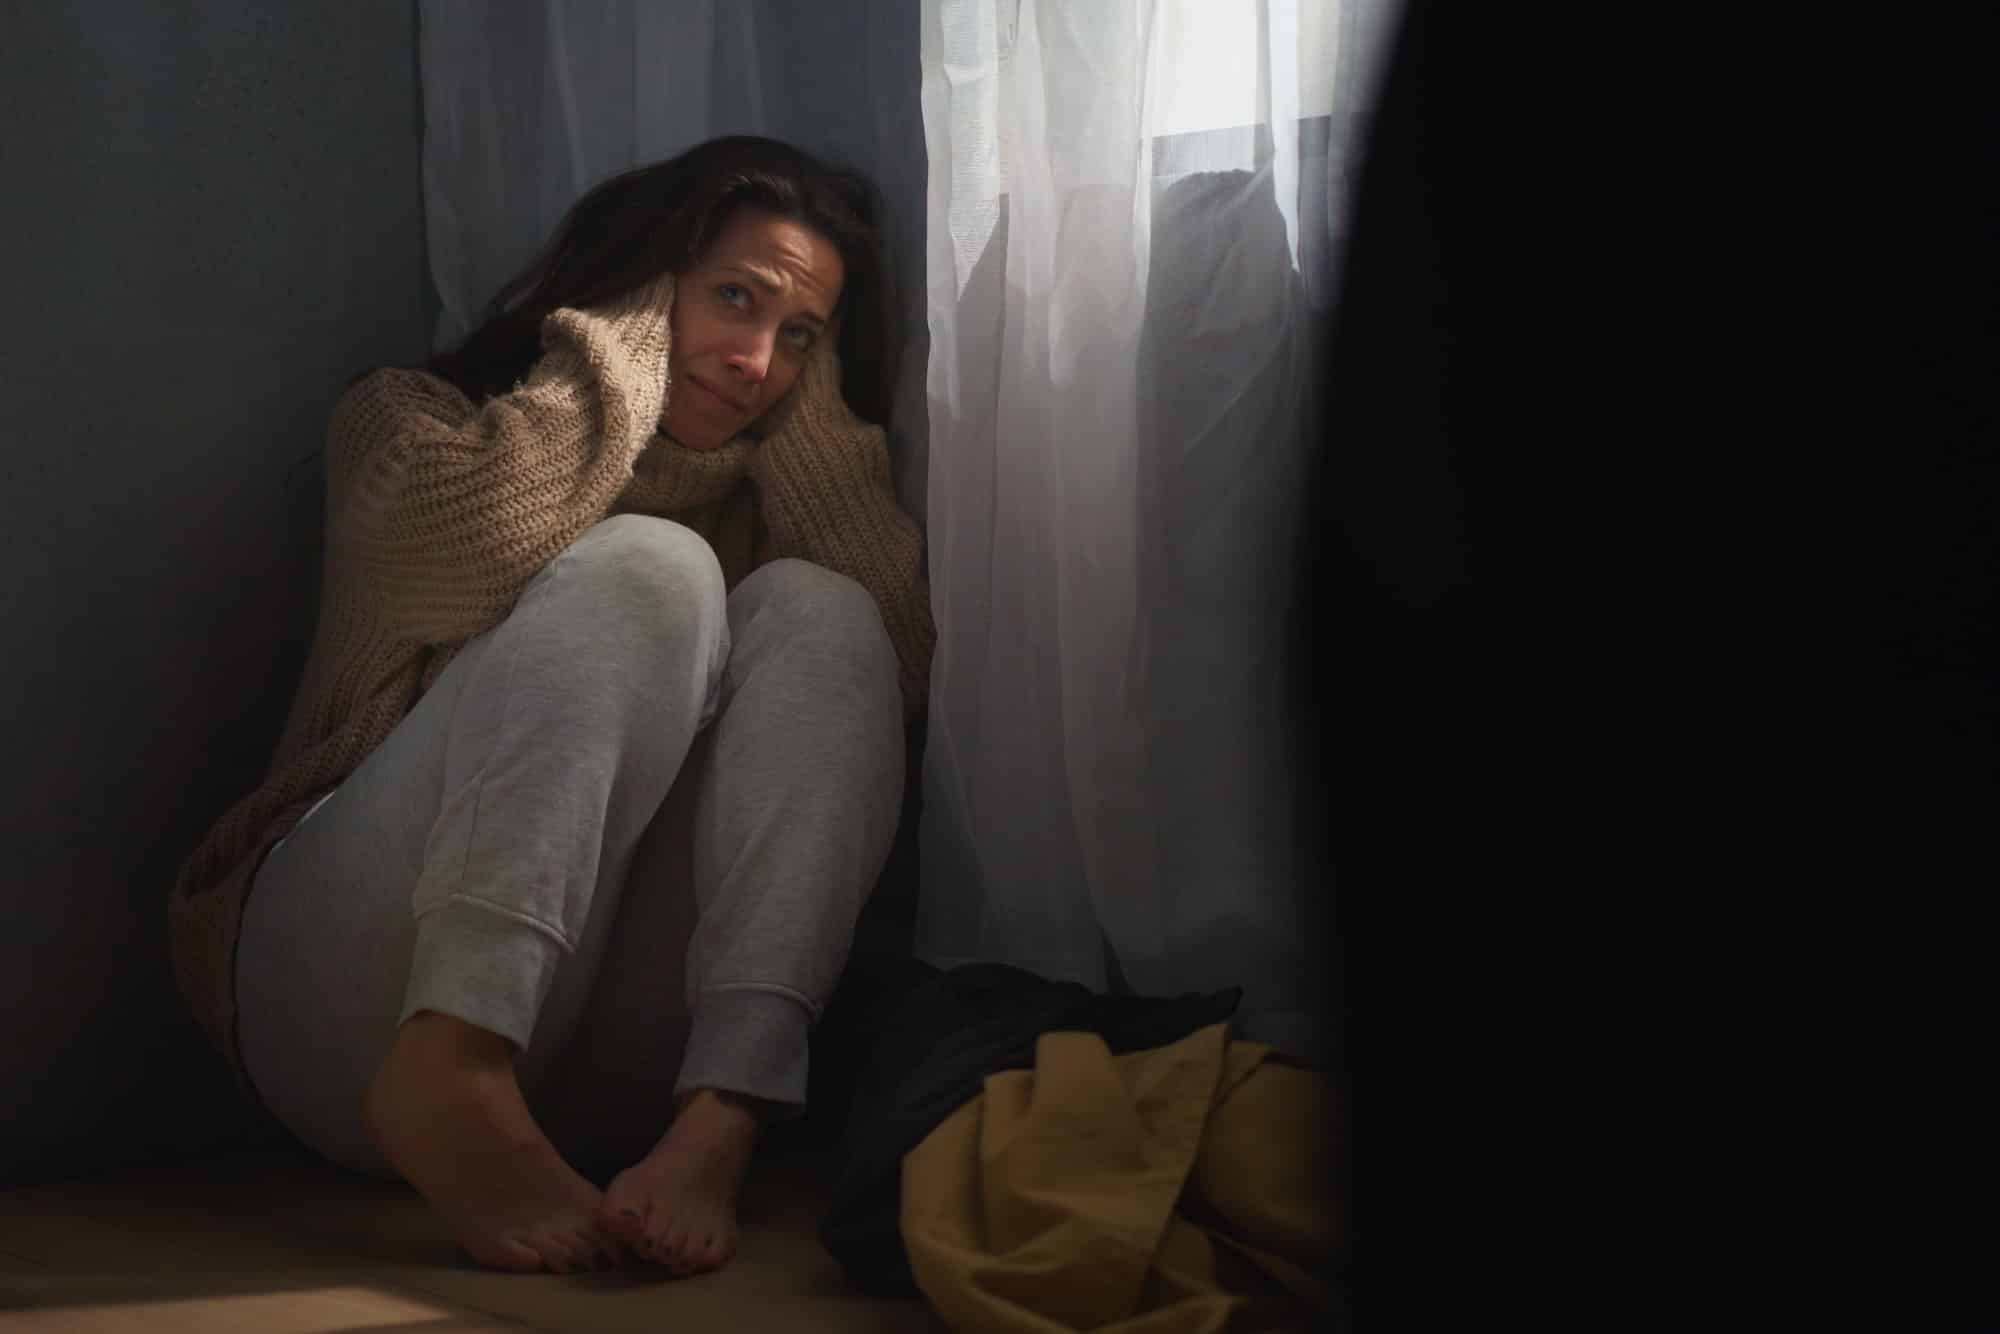 Une femme effrayée s'assoit sur le sol et se couvre la tête par crainte de violences domestiques